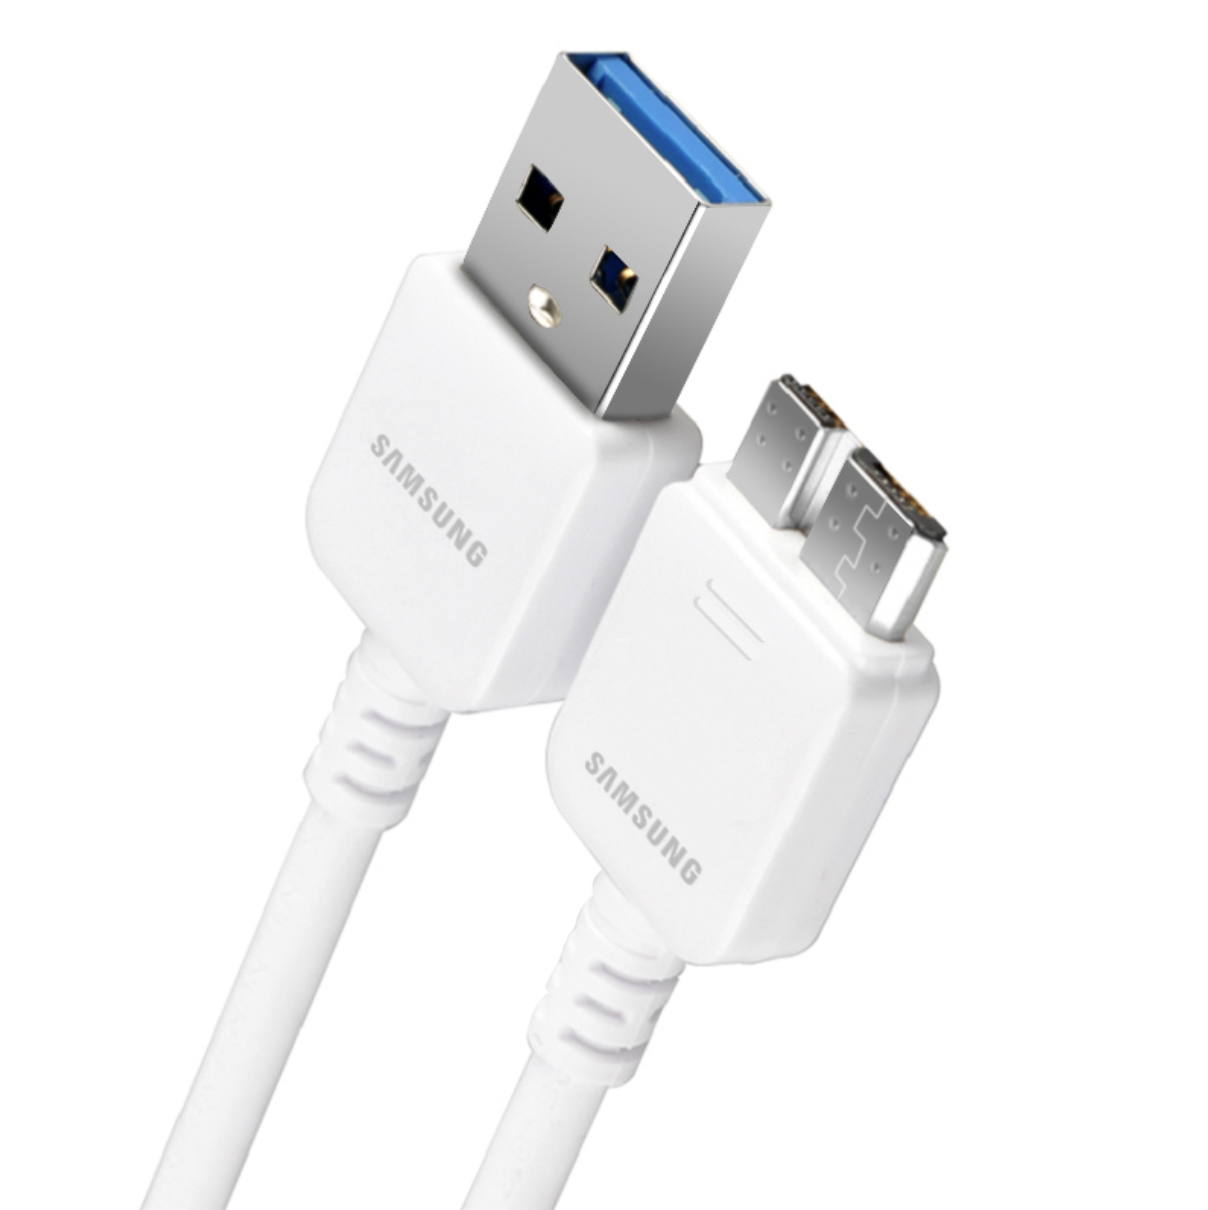 Usb samsung купить. Кабель Samsung USB 3.0. Samsung Galaxy s5 USB Cable. USB кабель для самсунг s3100. Микро зарядка самсунг а5.